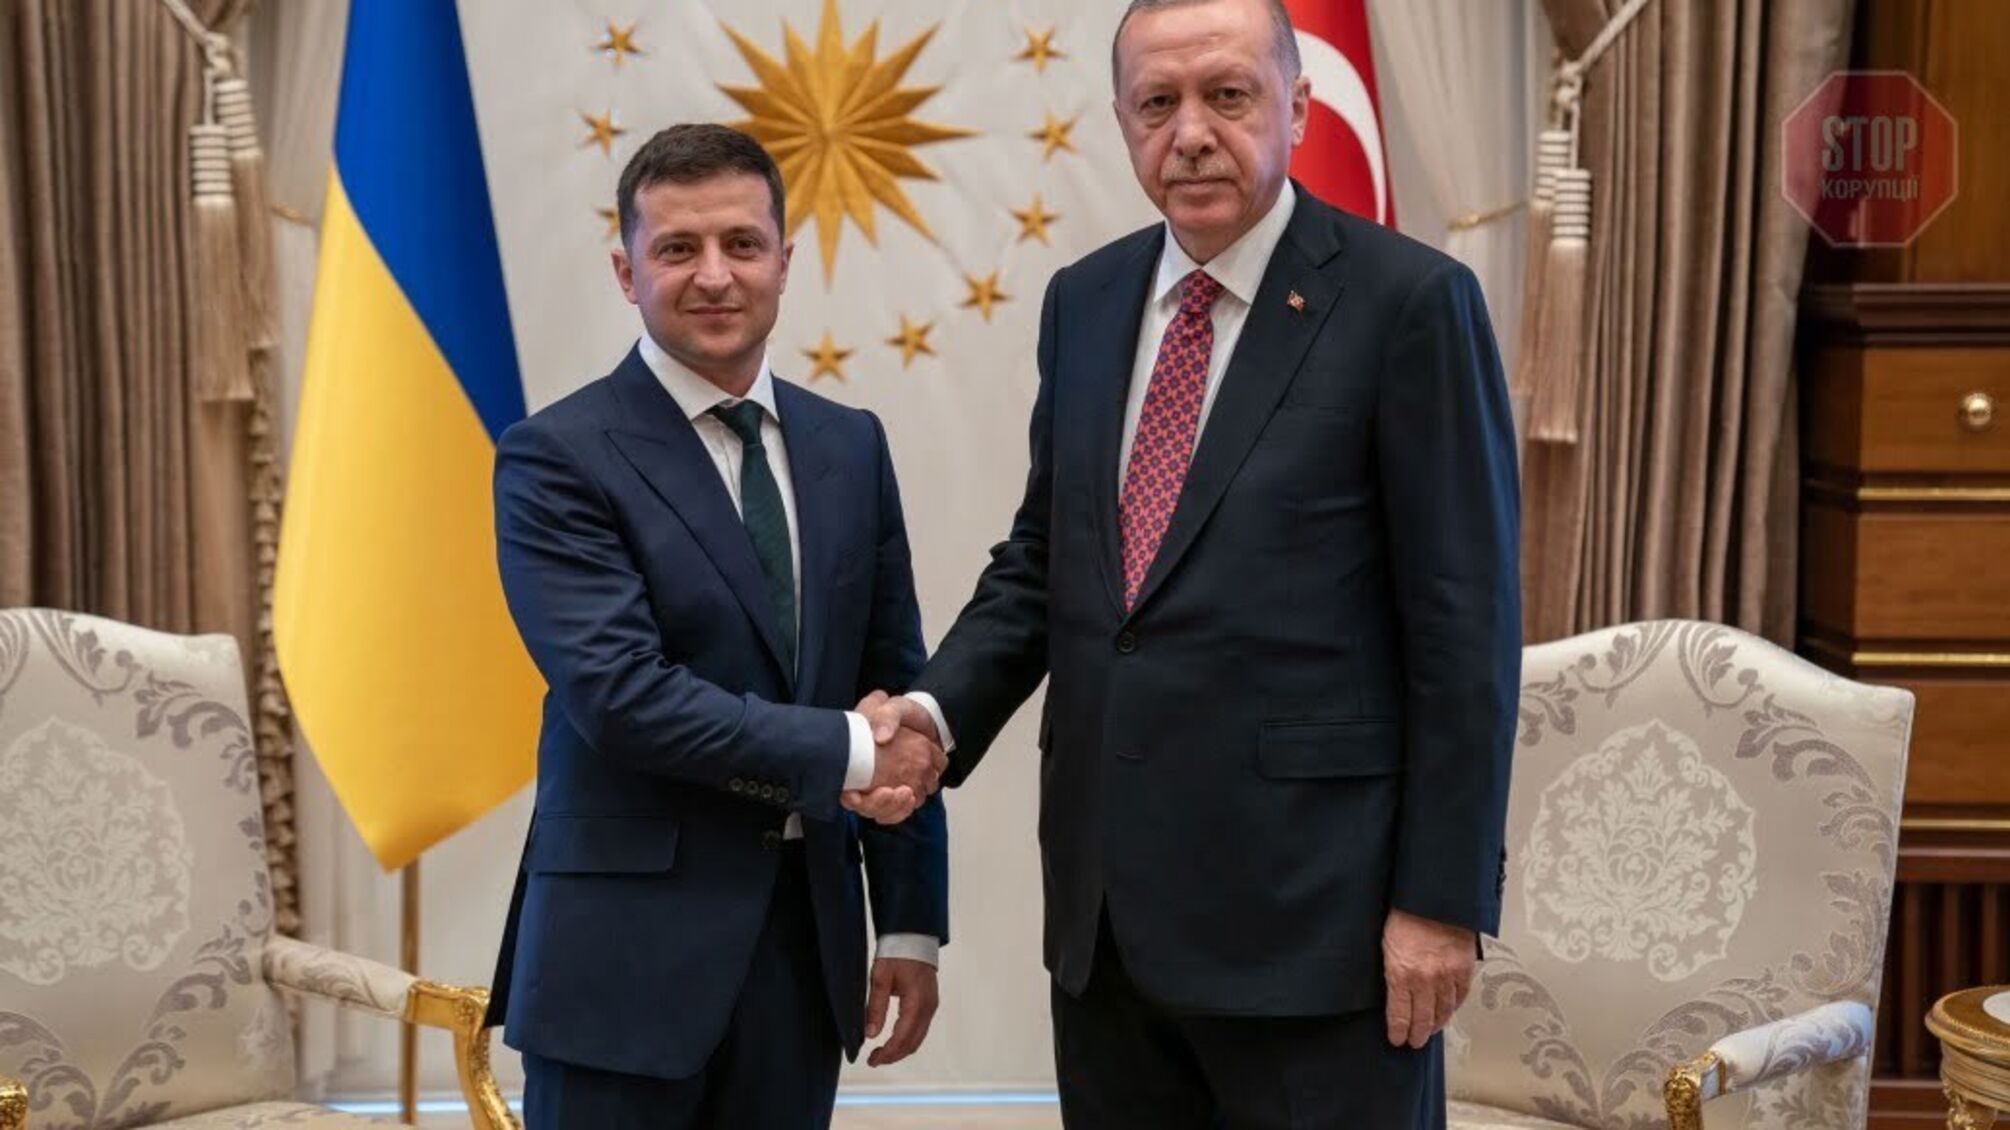 Співпраця із Туреччиною: Зеленський обговорить з Ердоганом поглиблення партнерства